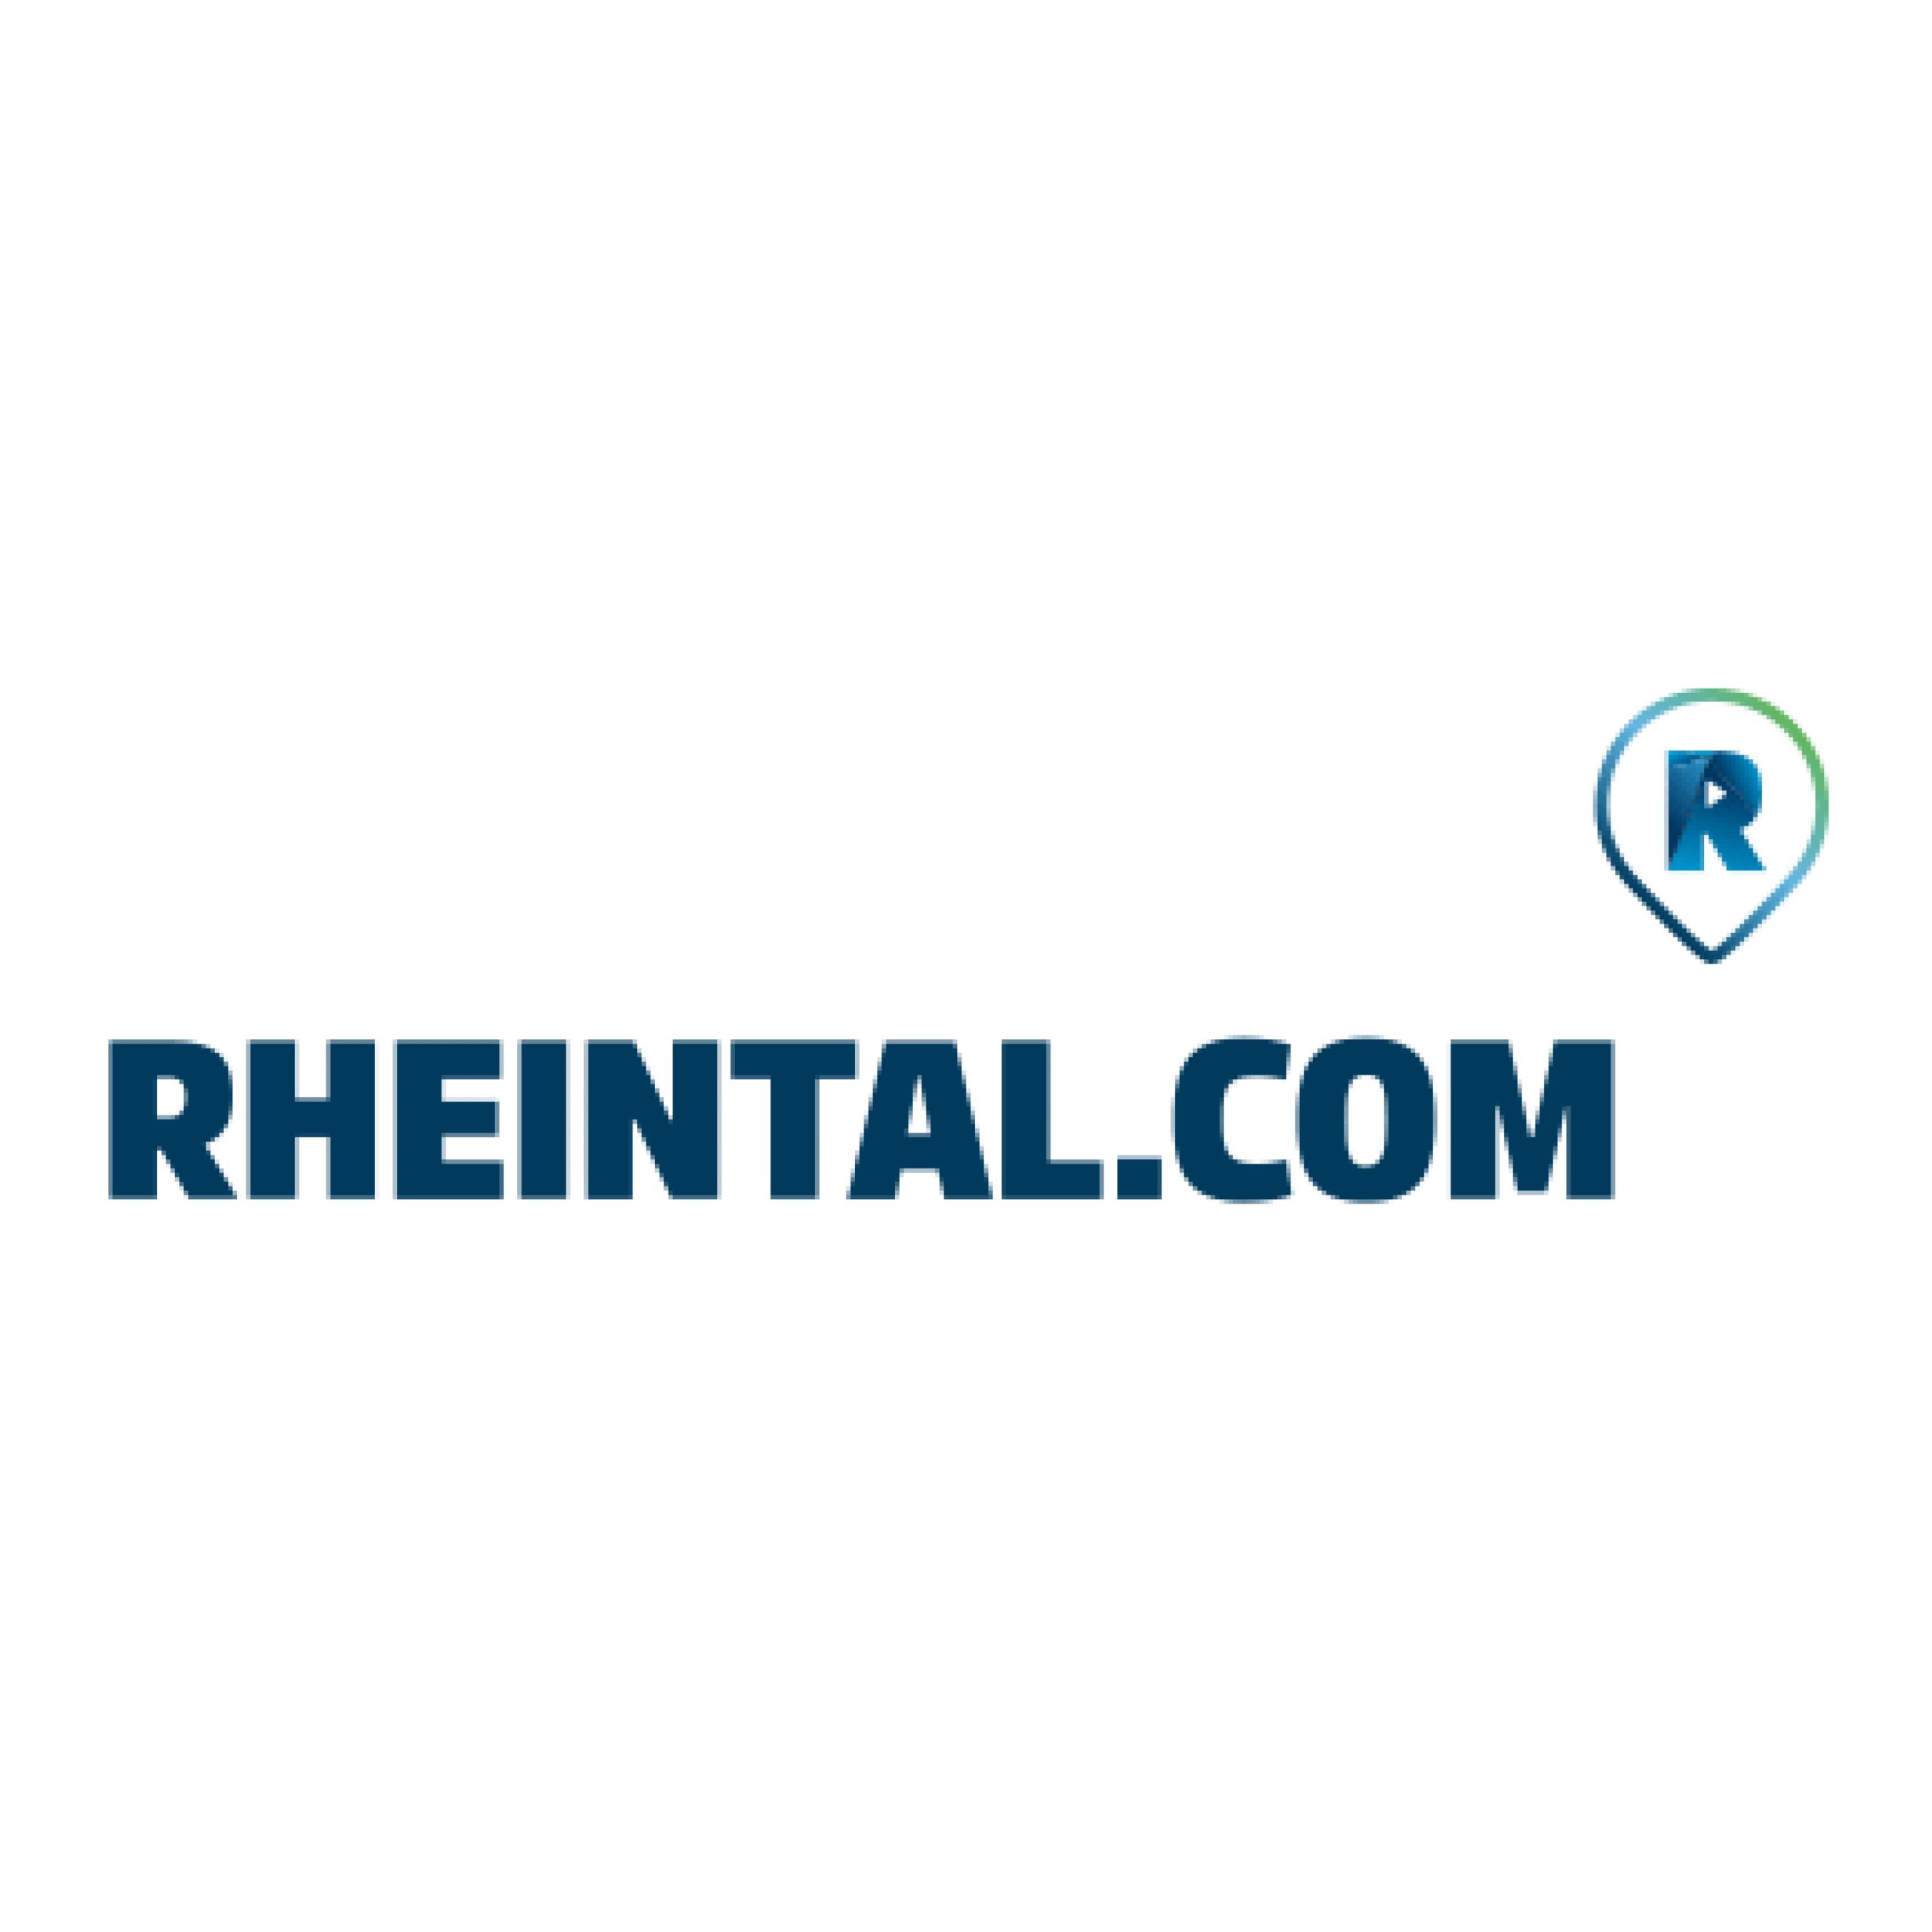 Rheintal.com